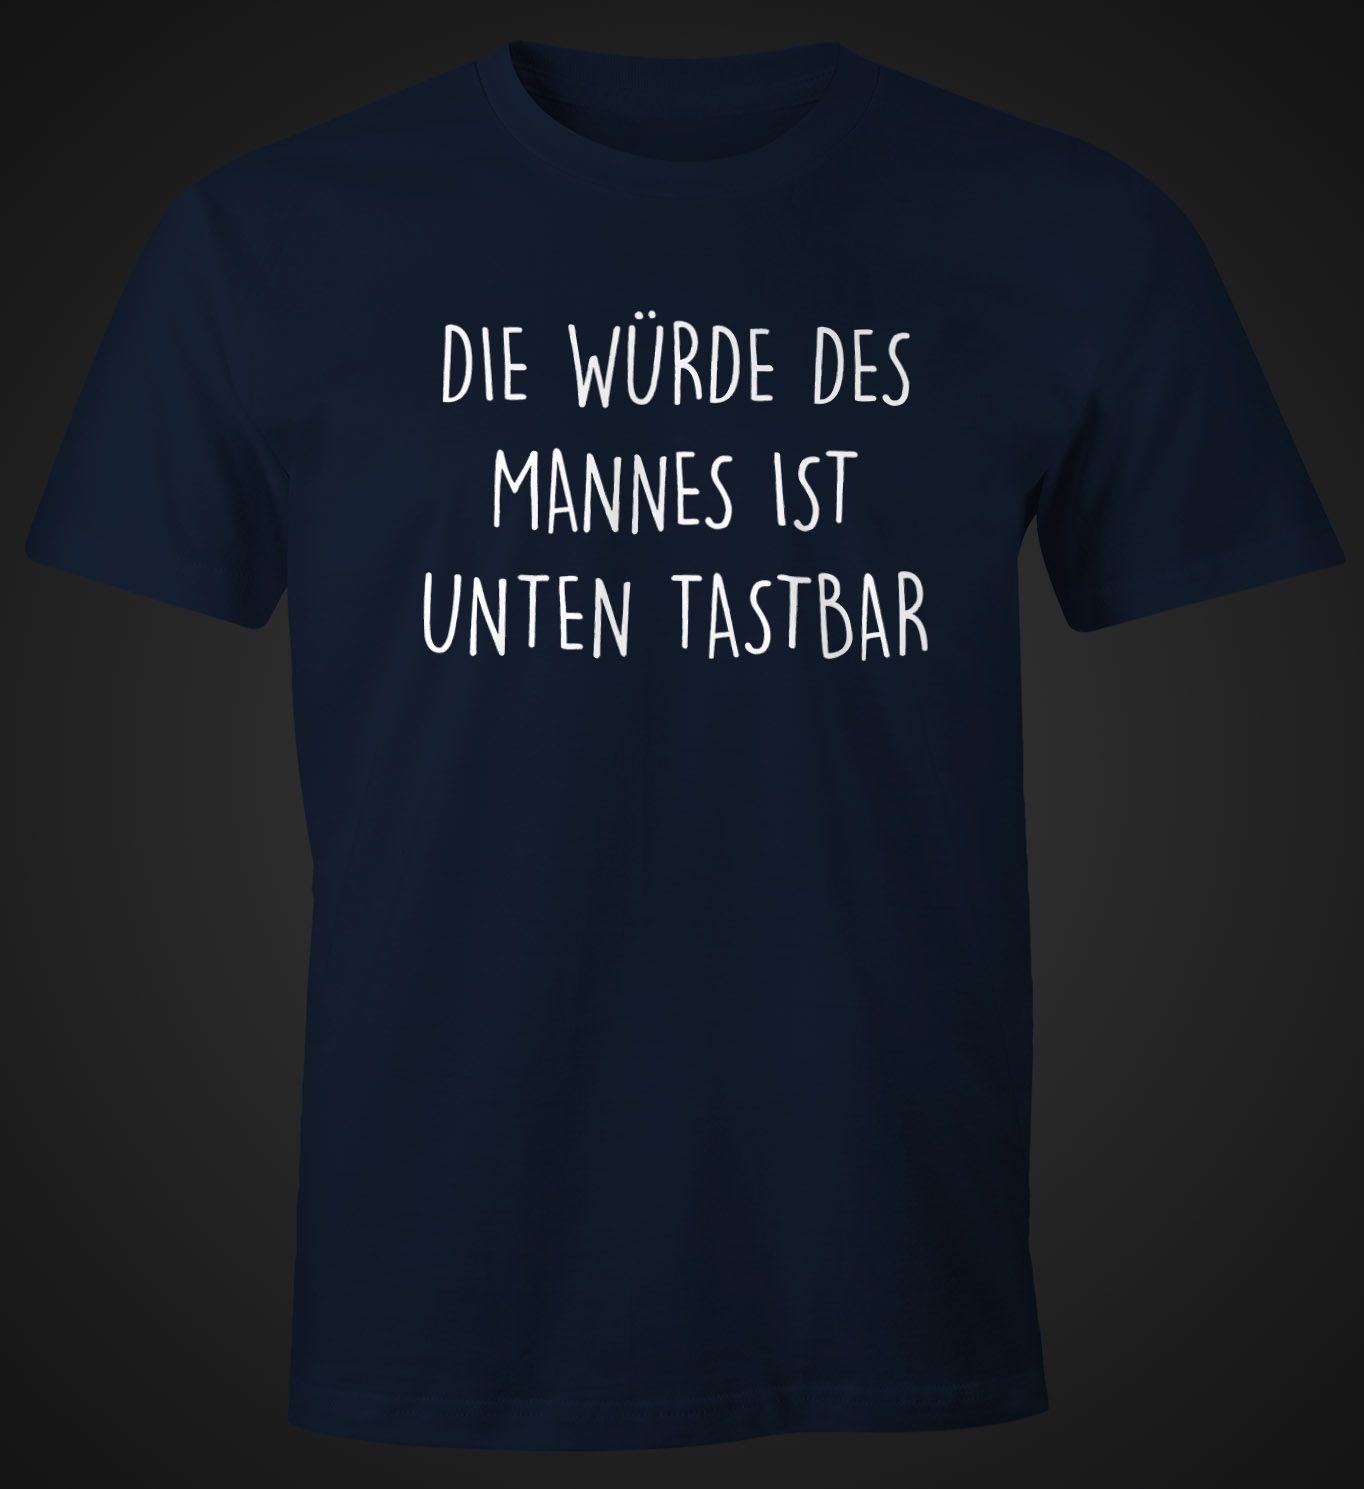 MoonWorks Print-Shirt Würde Moonworks® Mannes des T-Shirt tastbar Herren Lustiges Print unten mit Die Fun-Shirt navy Spruch mit ist